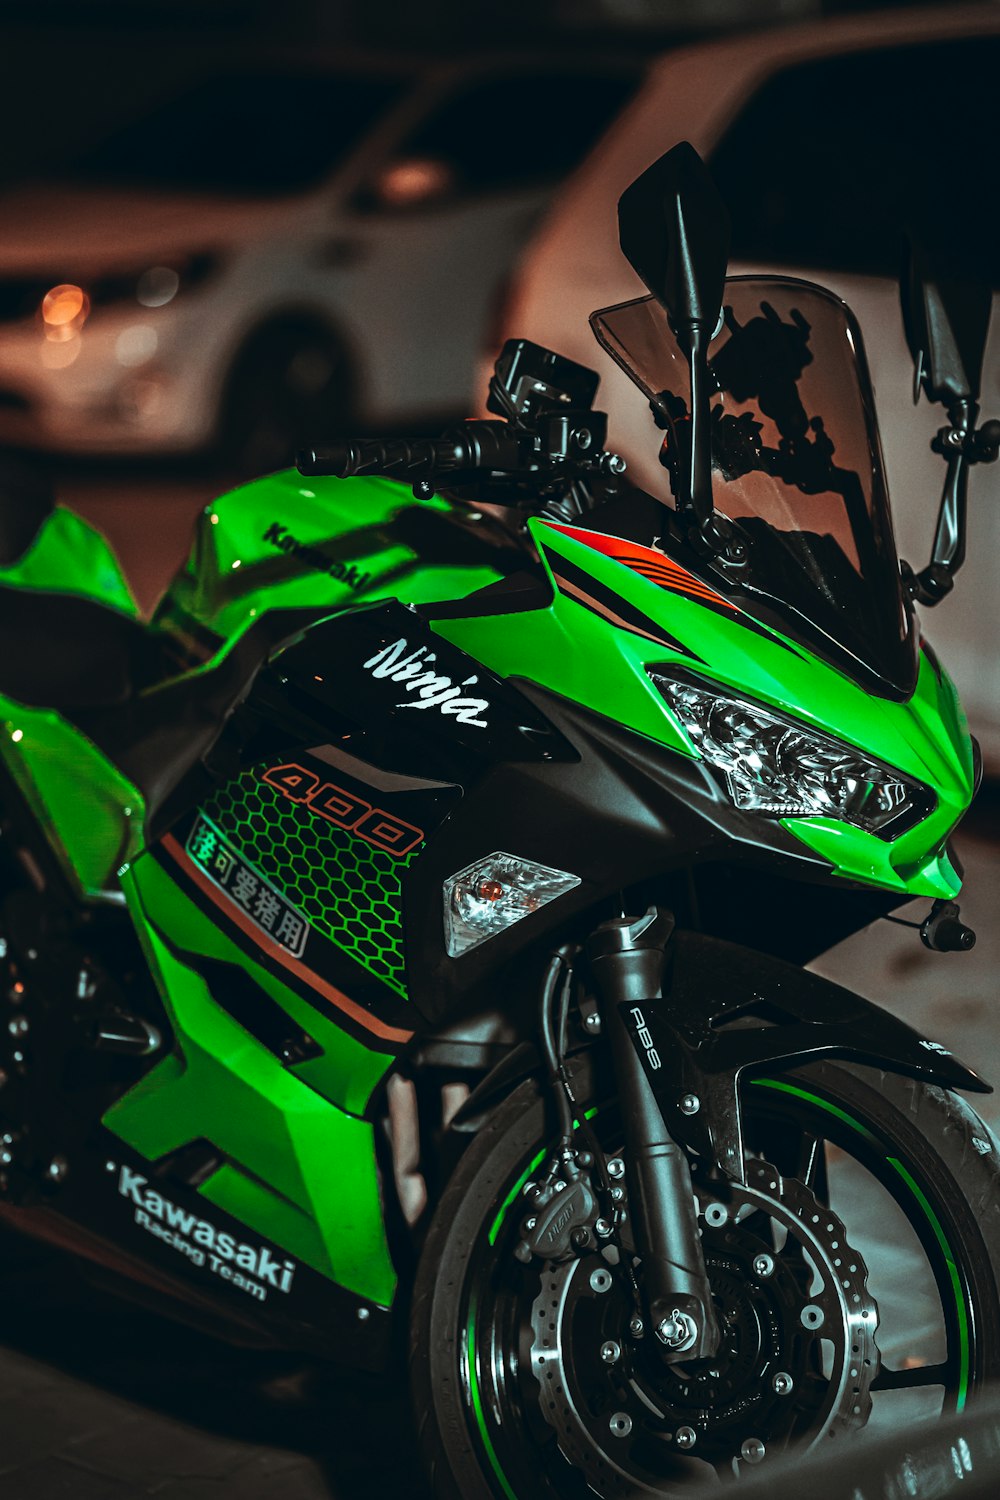 green and black honda motorcycle